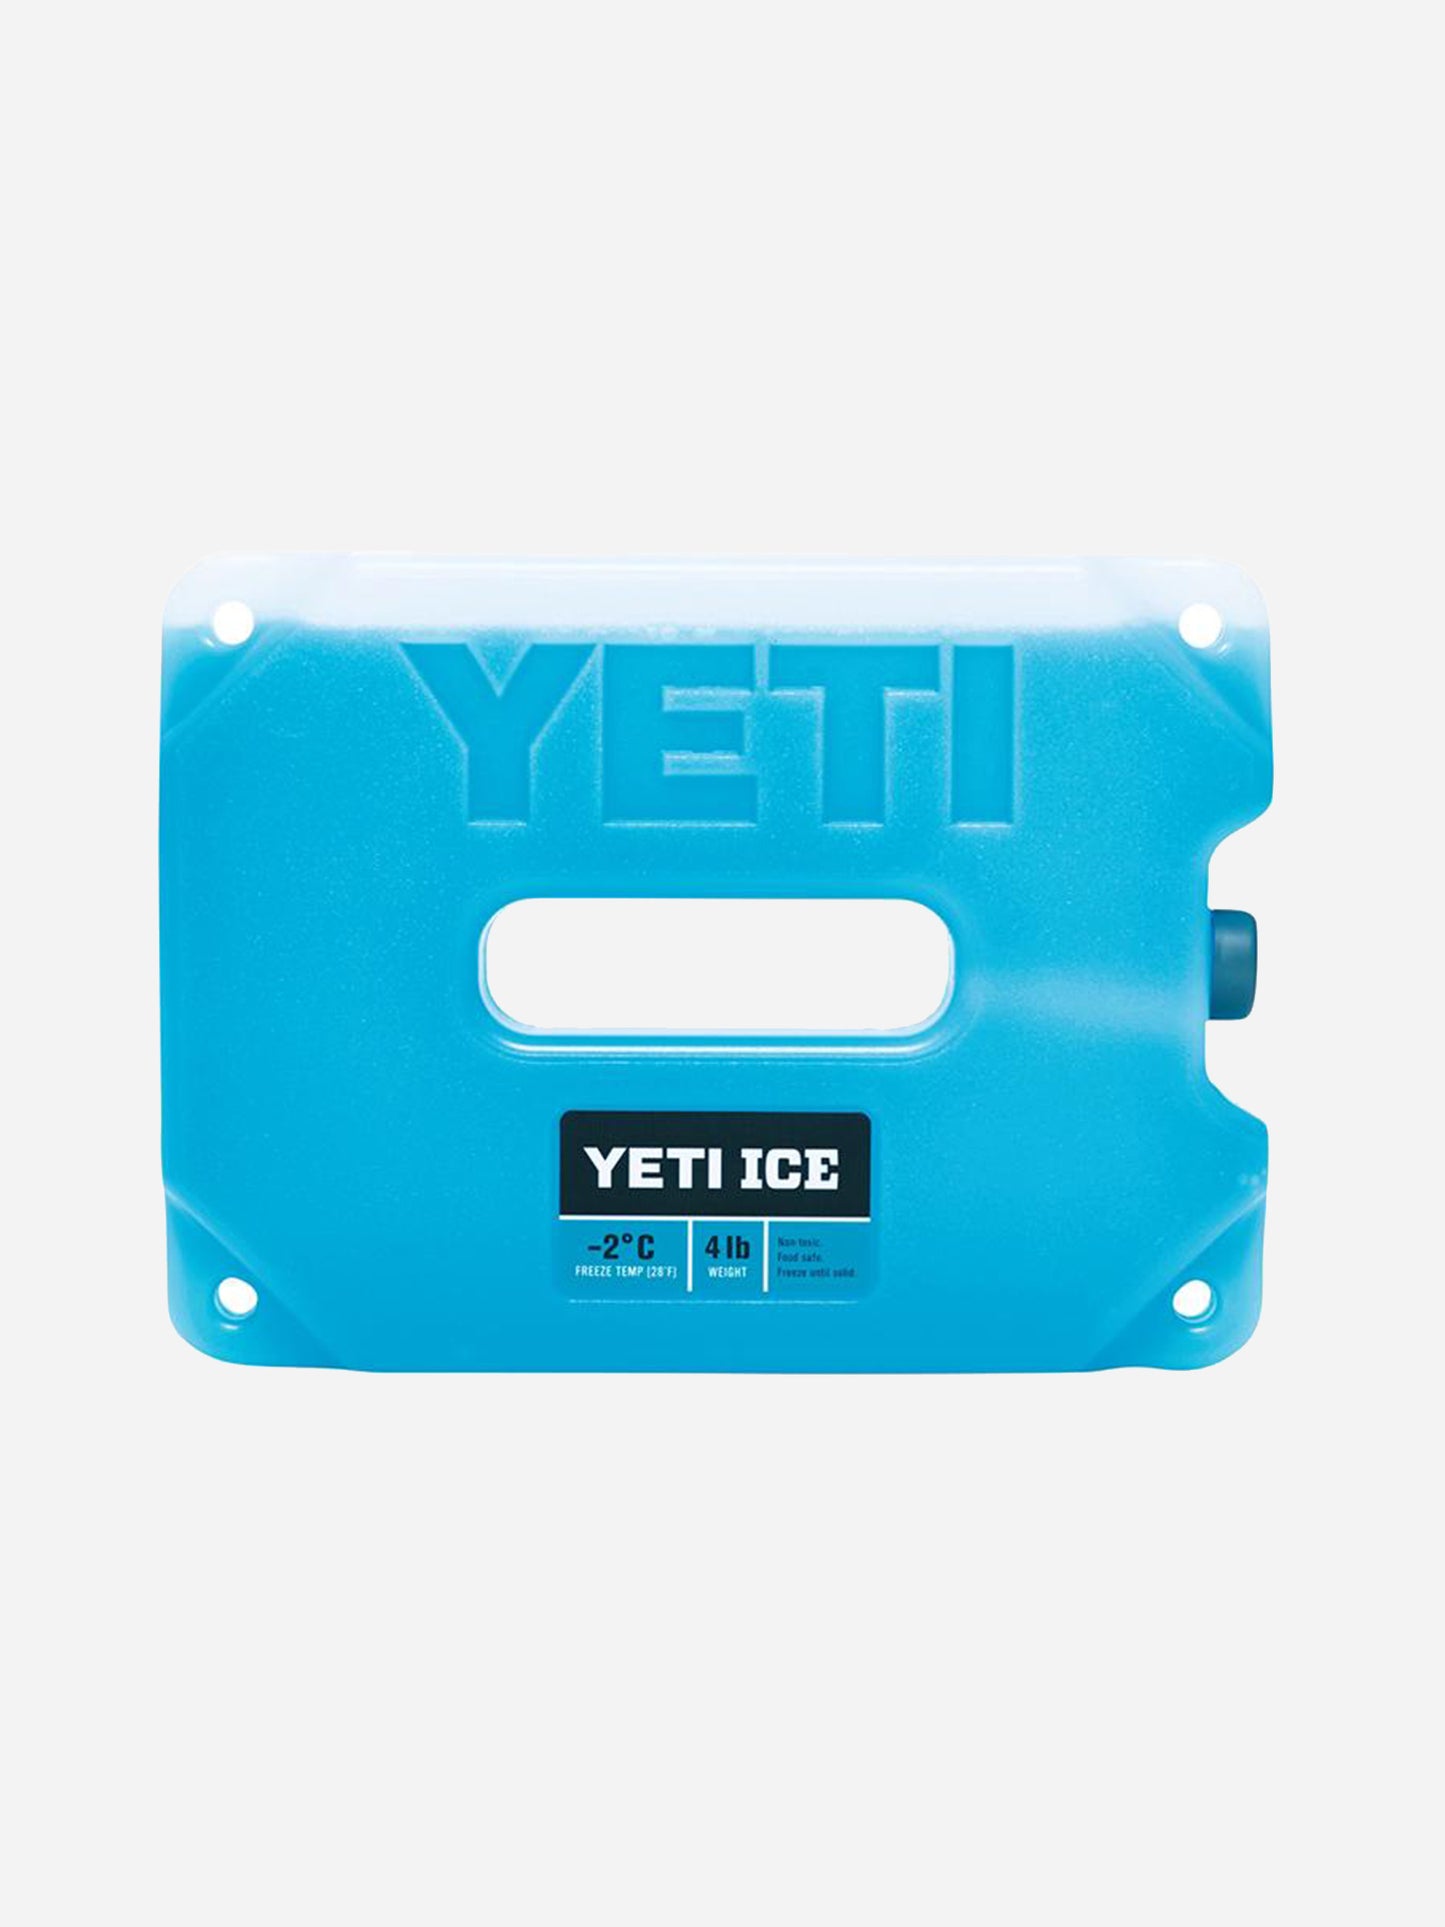 YETI Coolers Yeti Ice 4 lb.